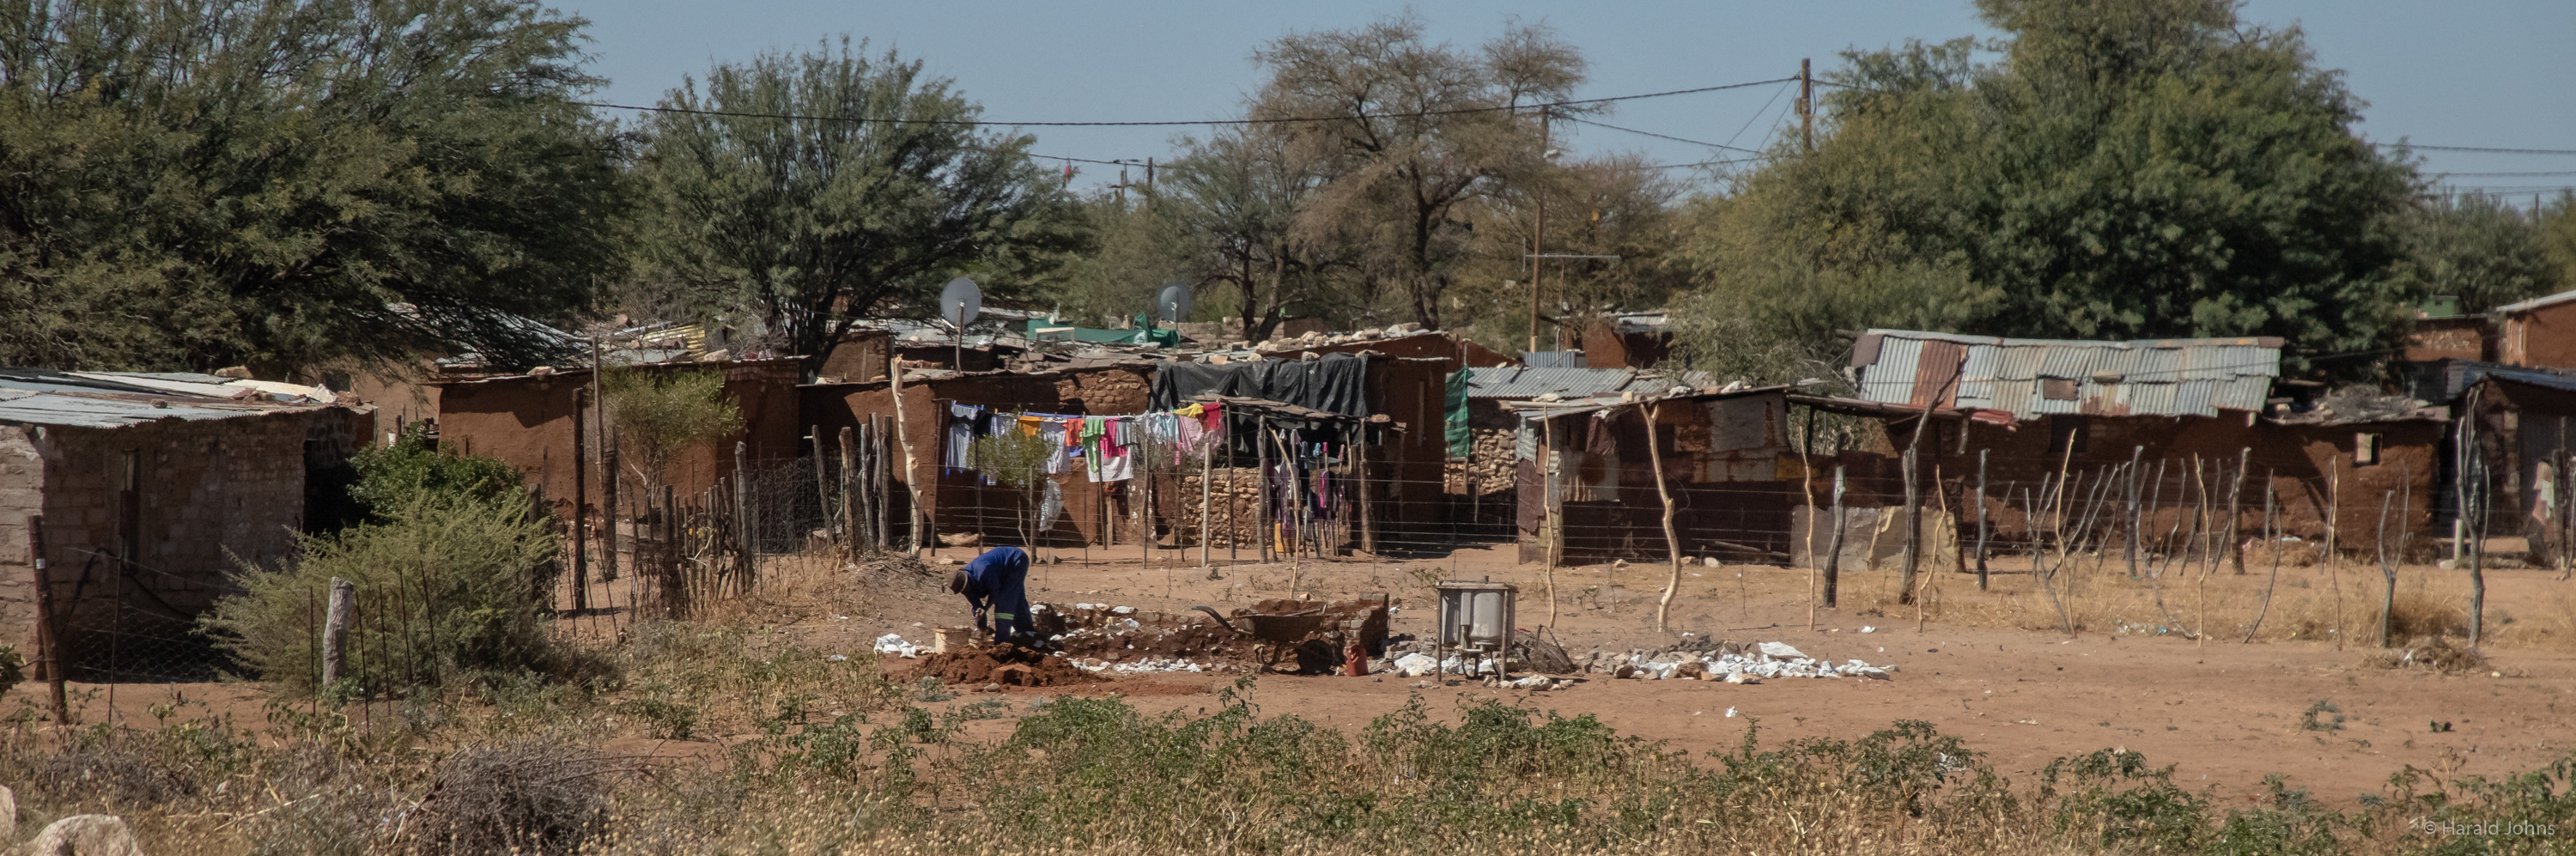 Siedlungen bei Omaruru